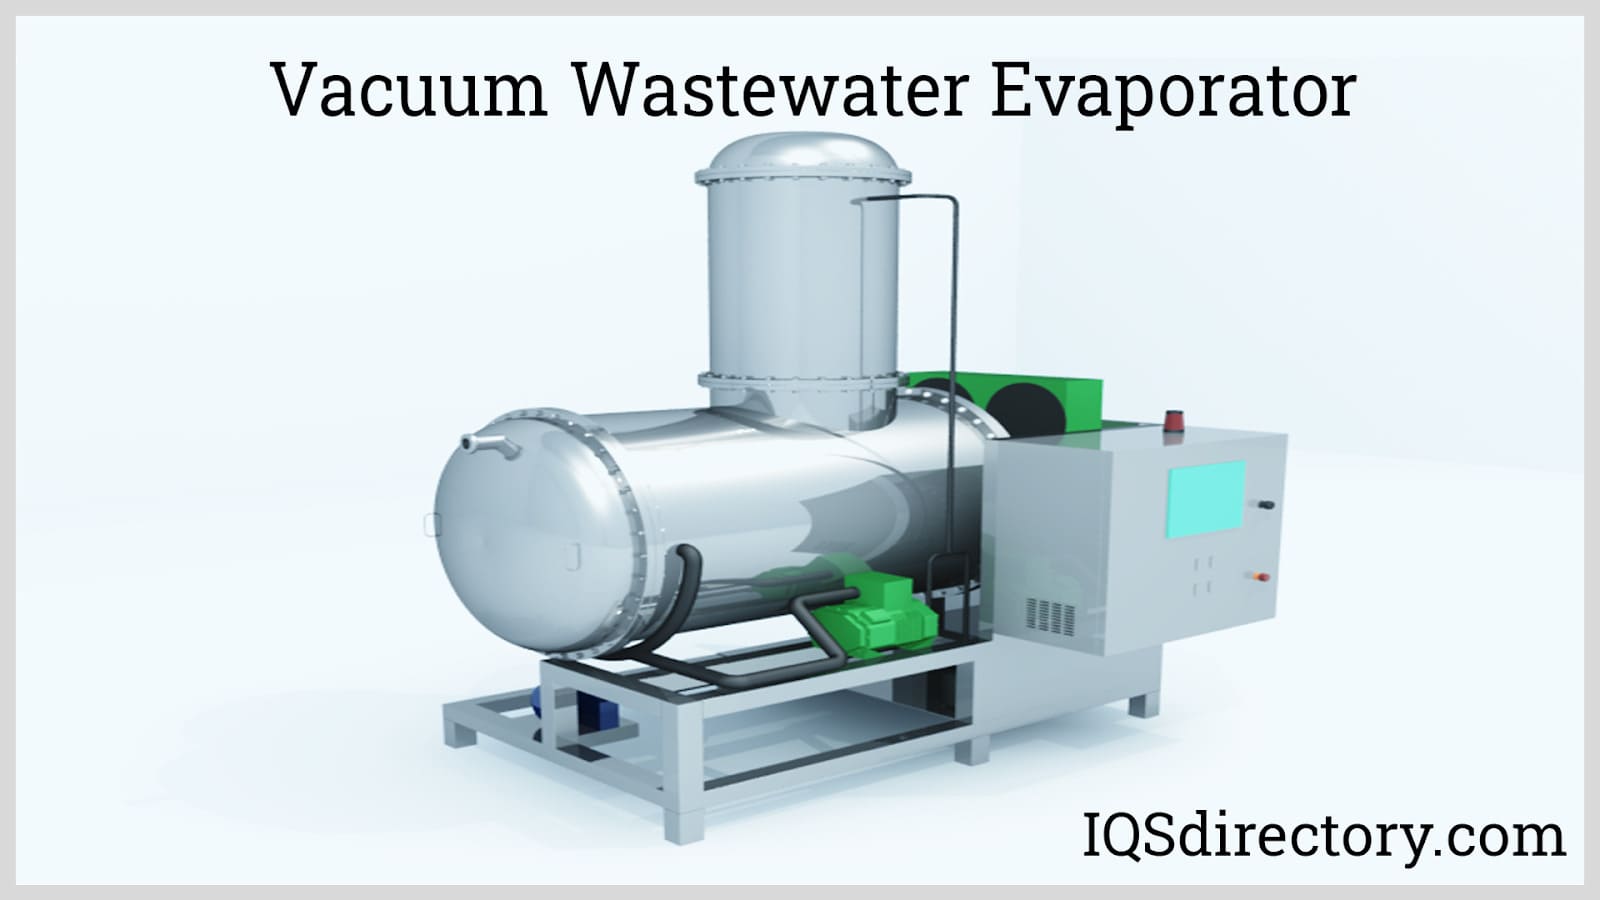 Vacuum Wastewater Evaporator